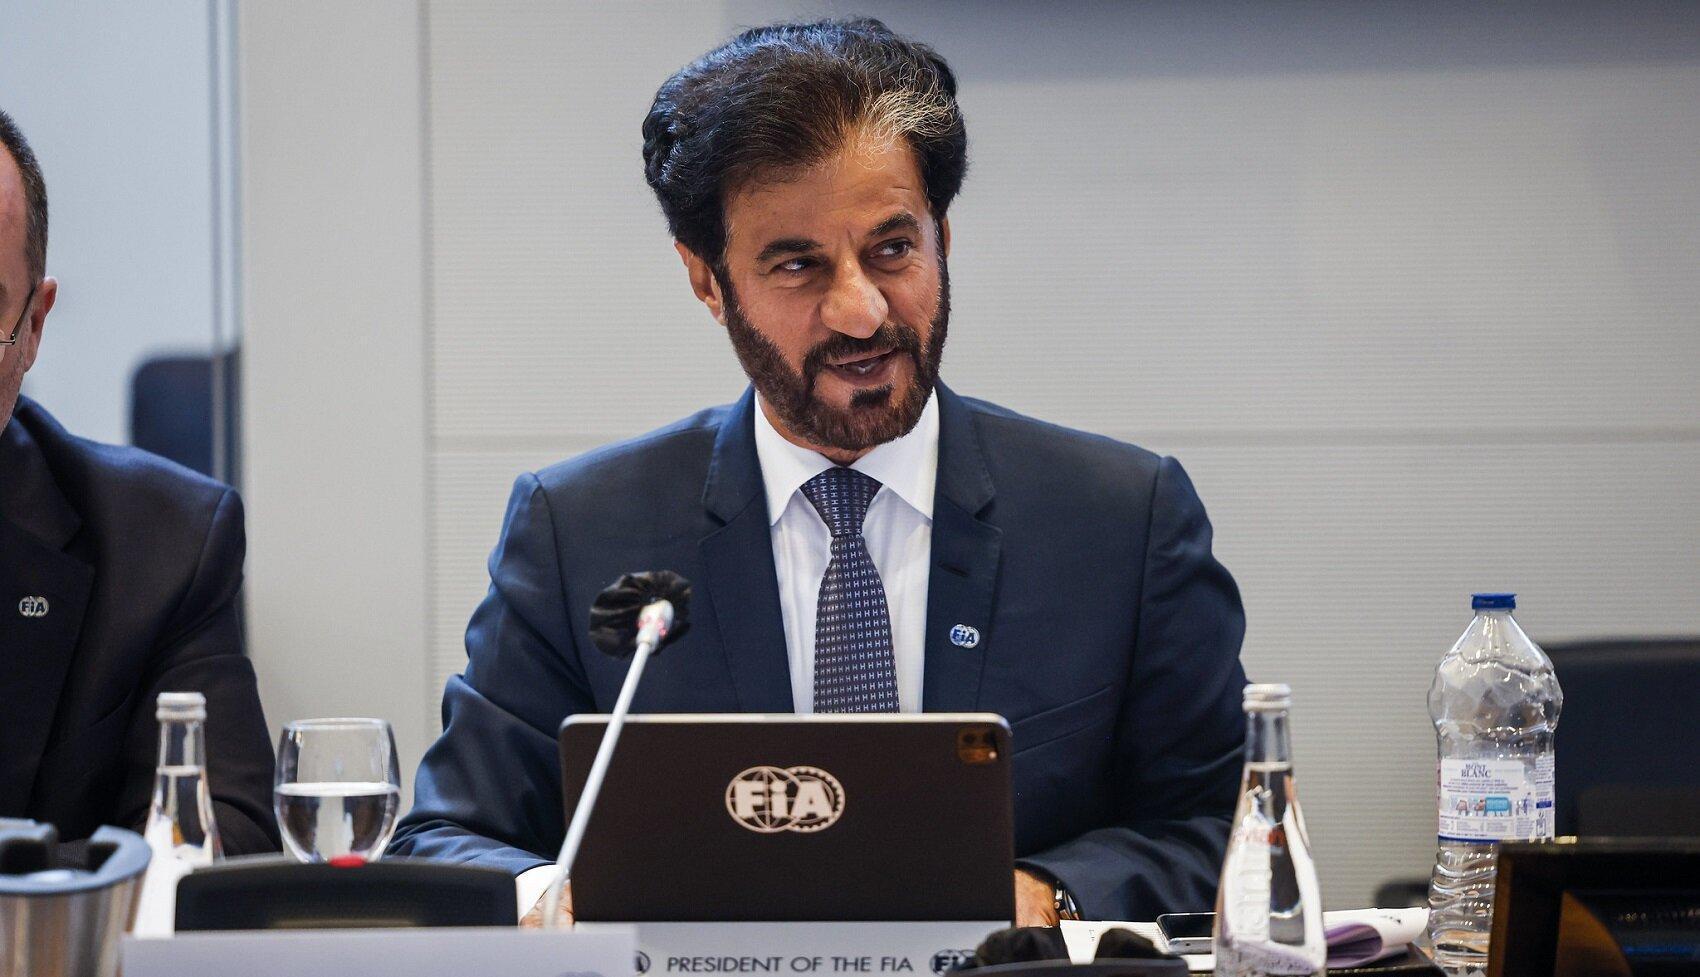 Mohamed Ben Sulayem, FIA